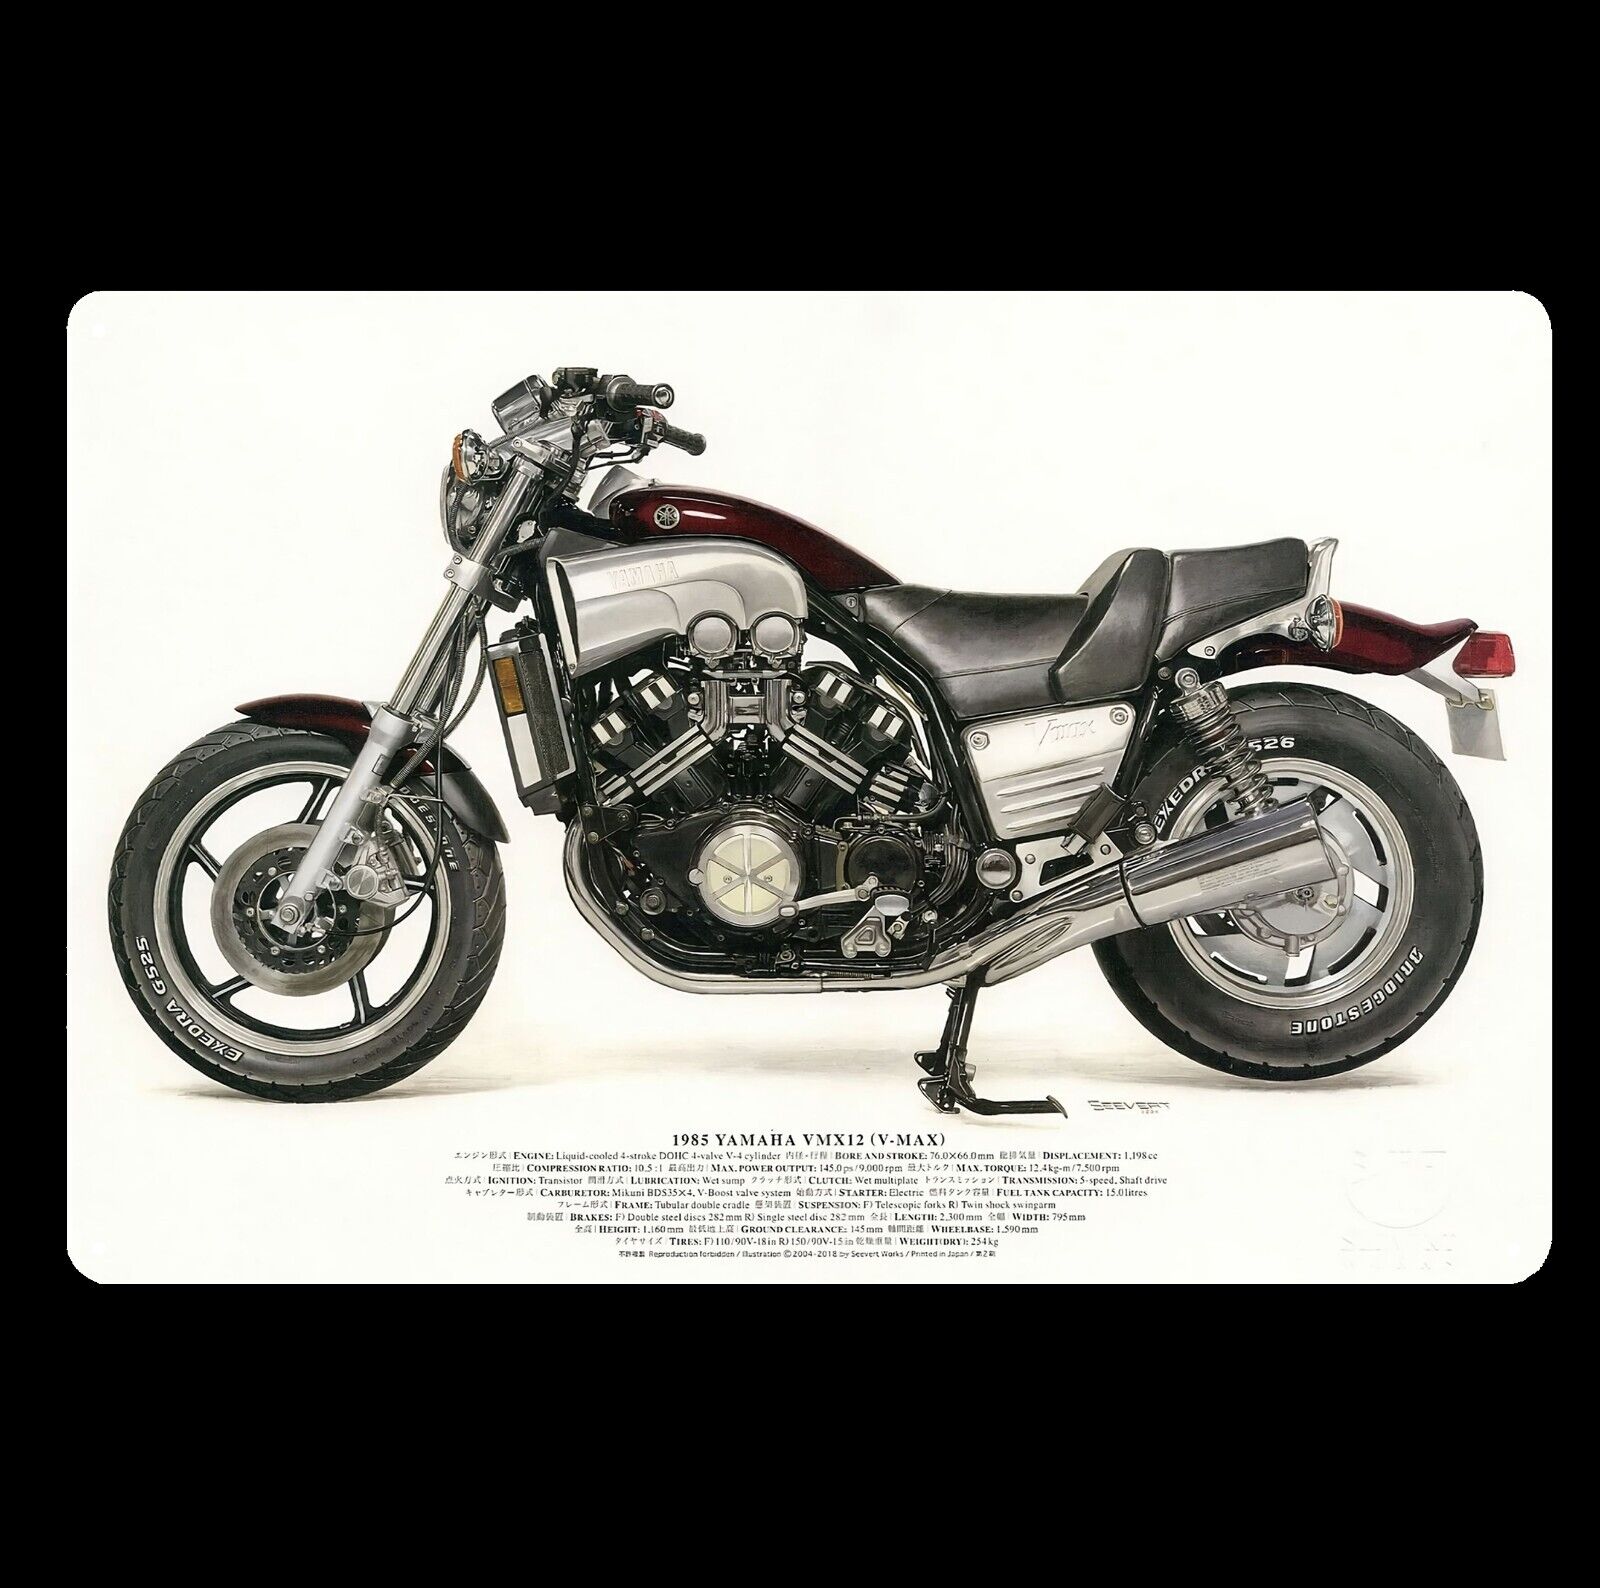 Yamaha Vmax 1200 v-max Motorcycle Metal Poster Tin Sign 20x30cm